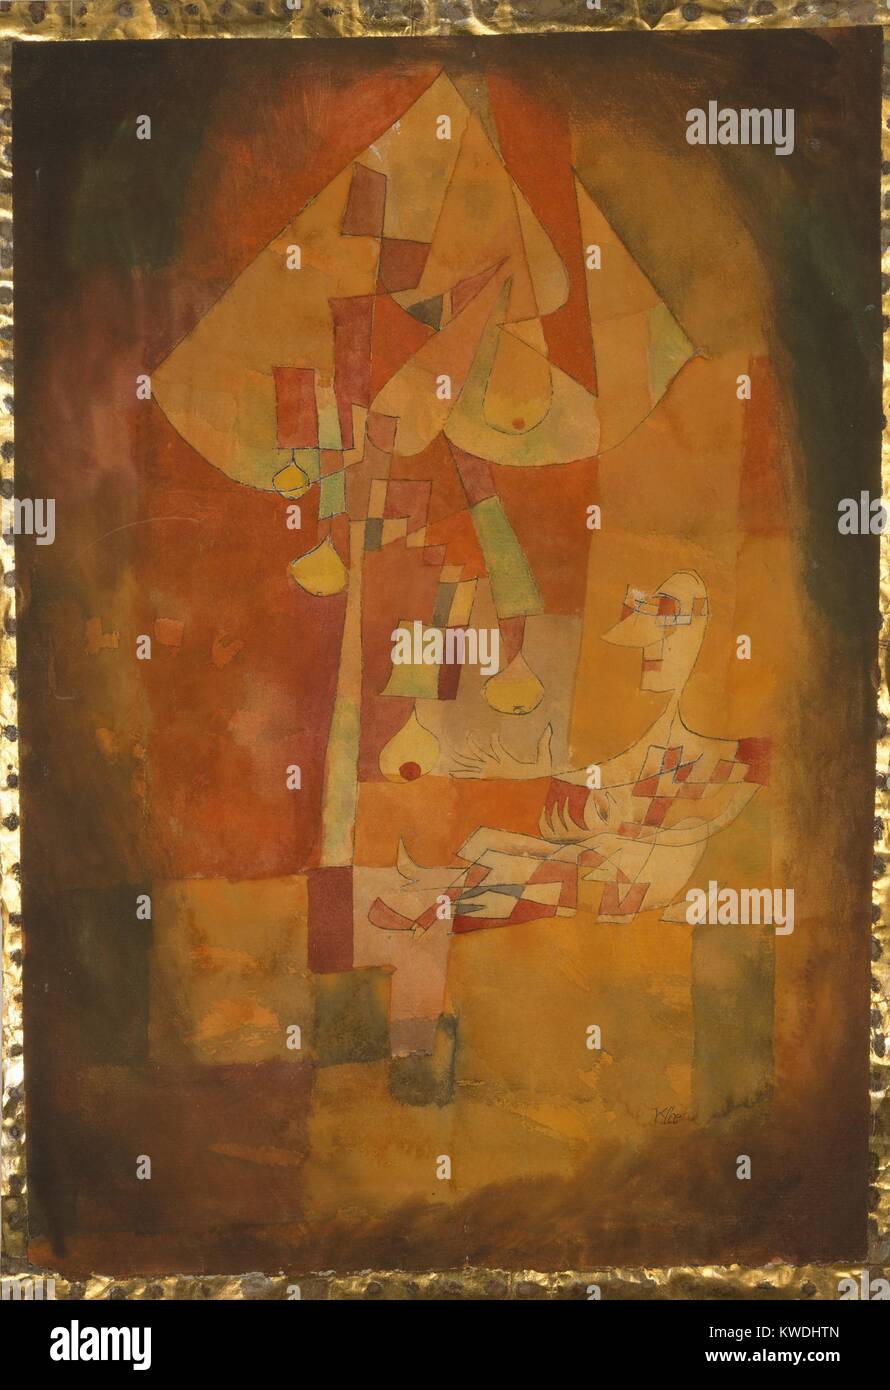 Der MANN UNTER DEM BIRNBAUM von Paul Klee, 1921, Schweizer Aquarell Malerei. In Tönen von Orange, großen und kleinen Formen der Farbe lackiert erstellen Die kubistischen Bild (BSLOC 2017 7 35) Stockfoto